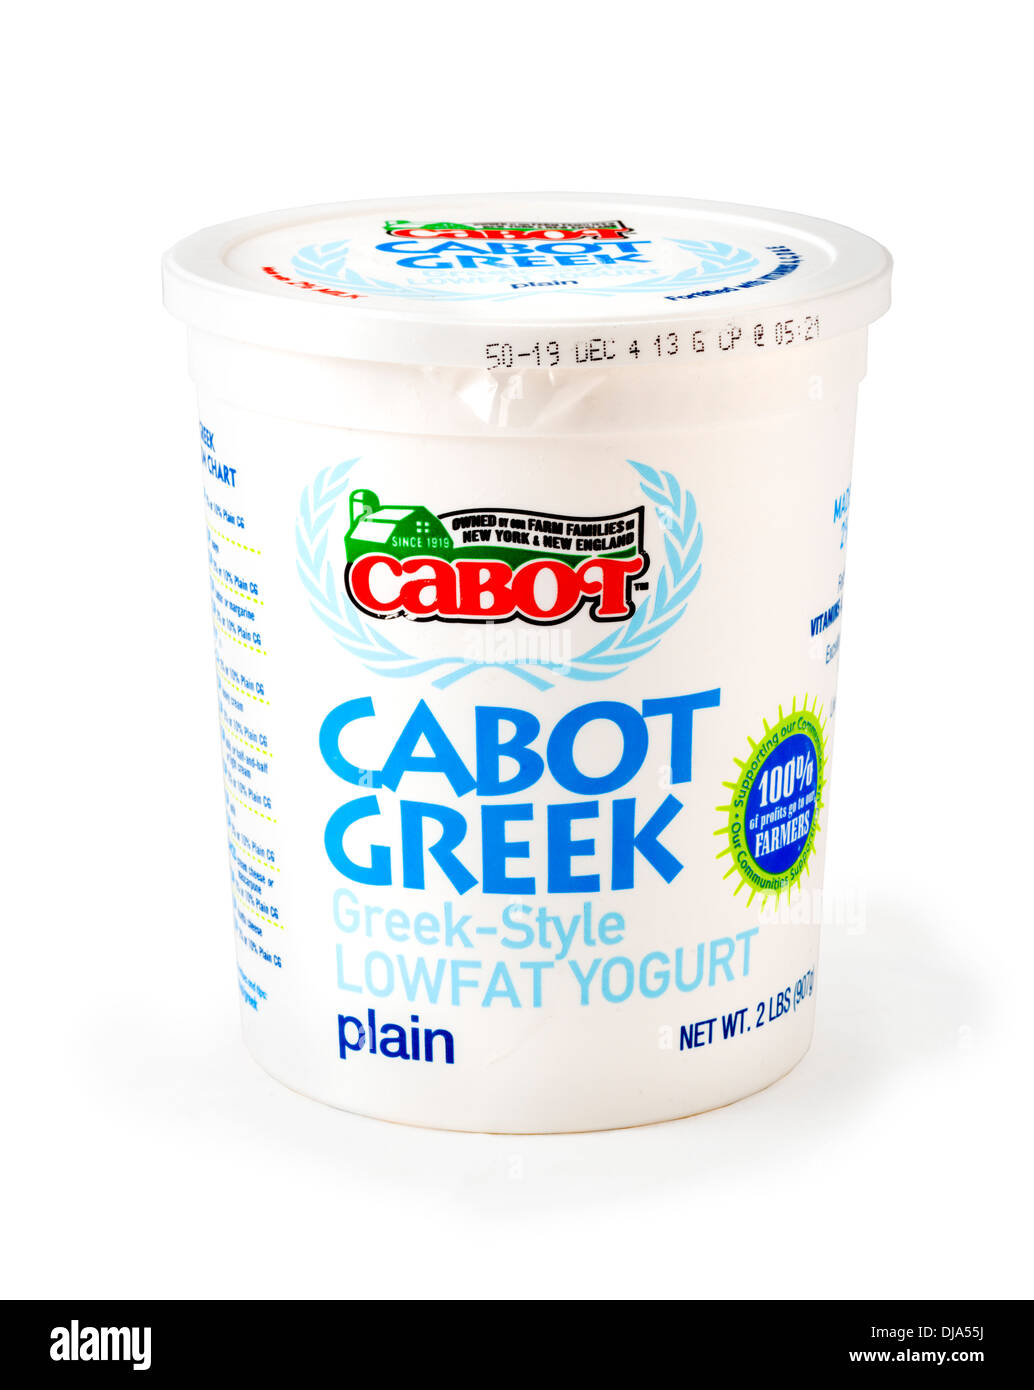 Carton of Cabot Plain Low Fat Greek Style Yogurt, USA Stock Photo